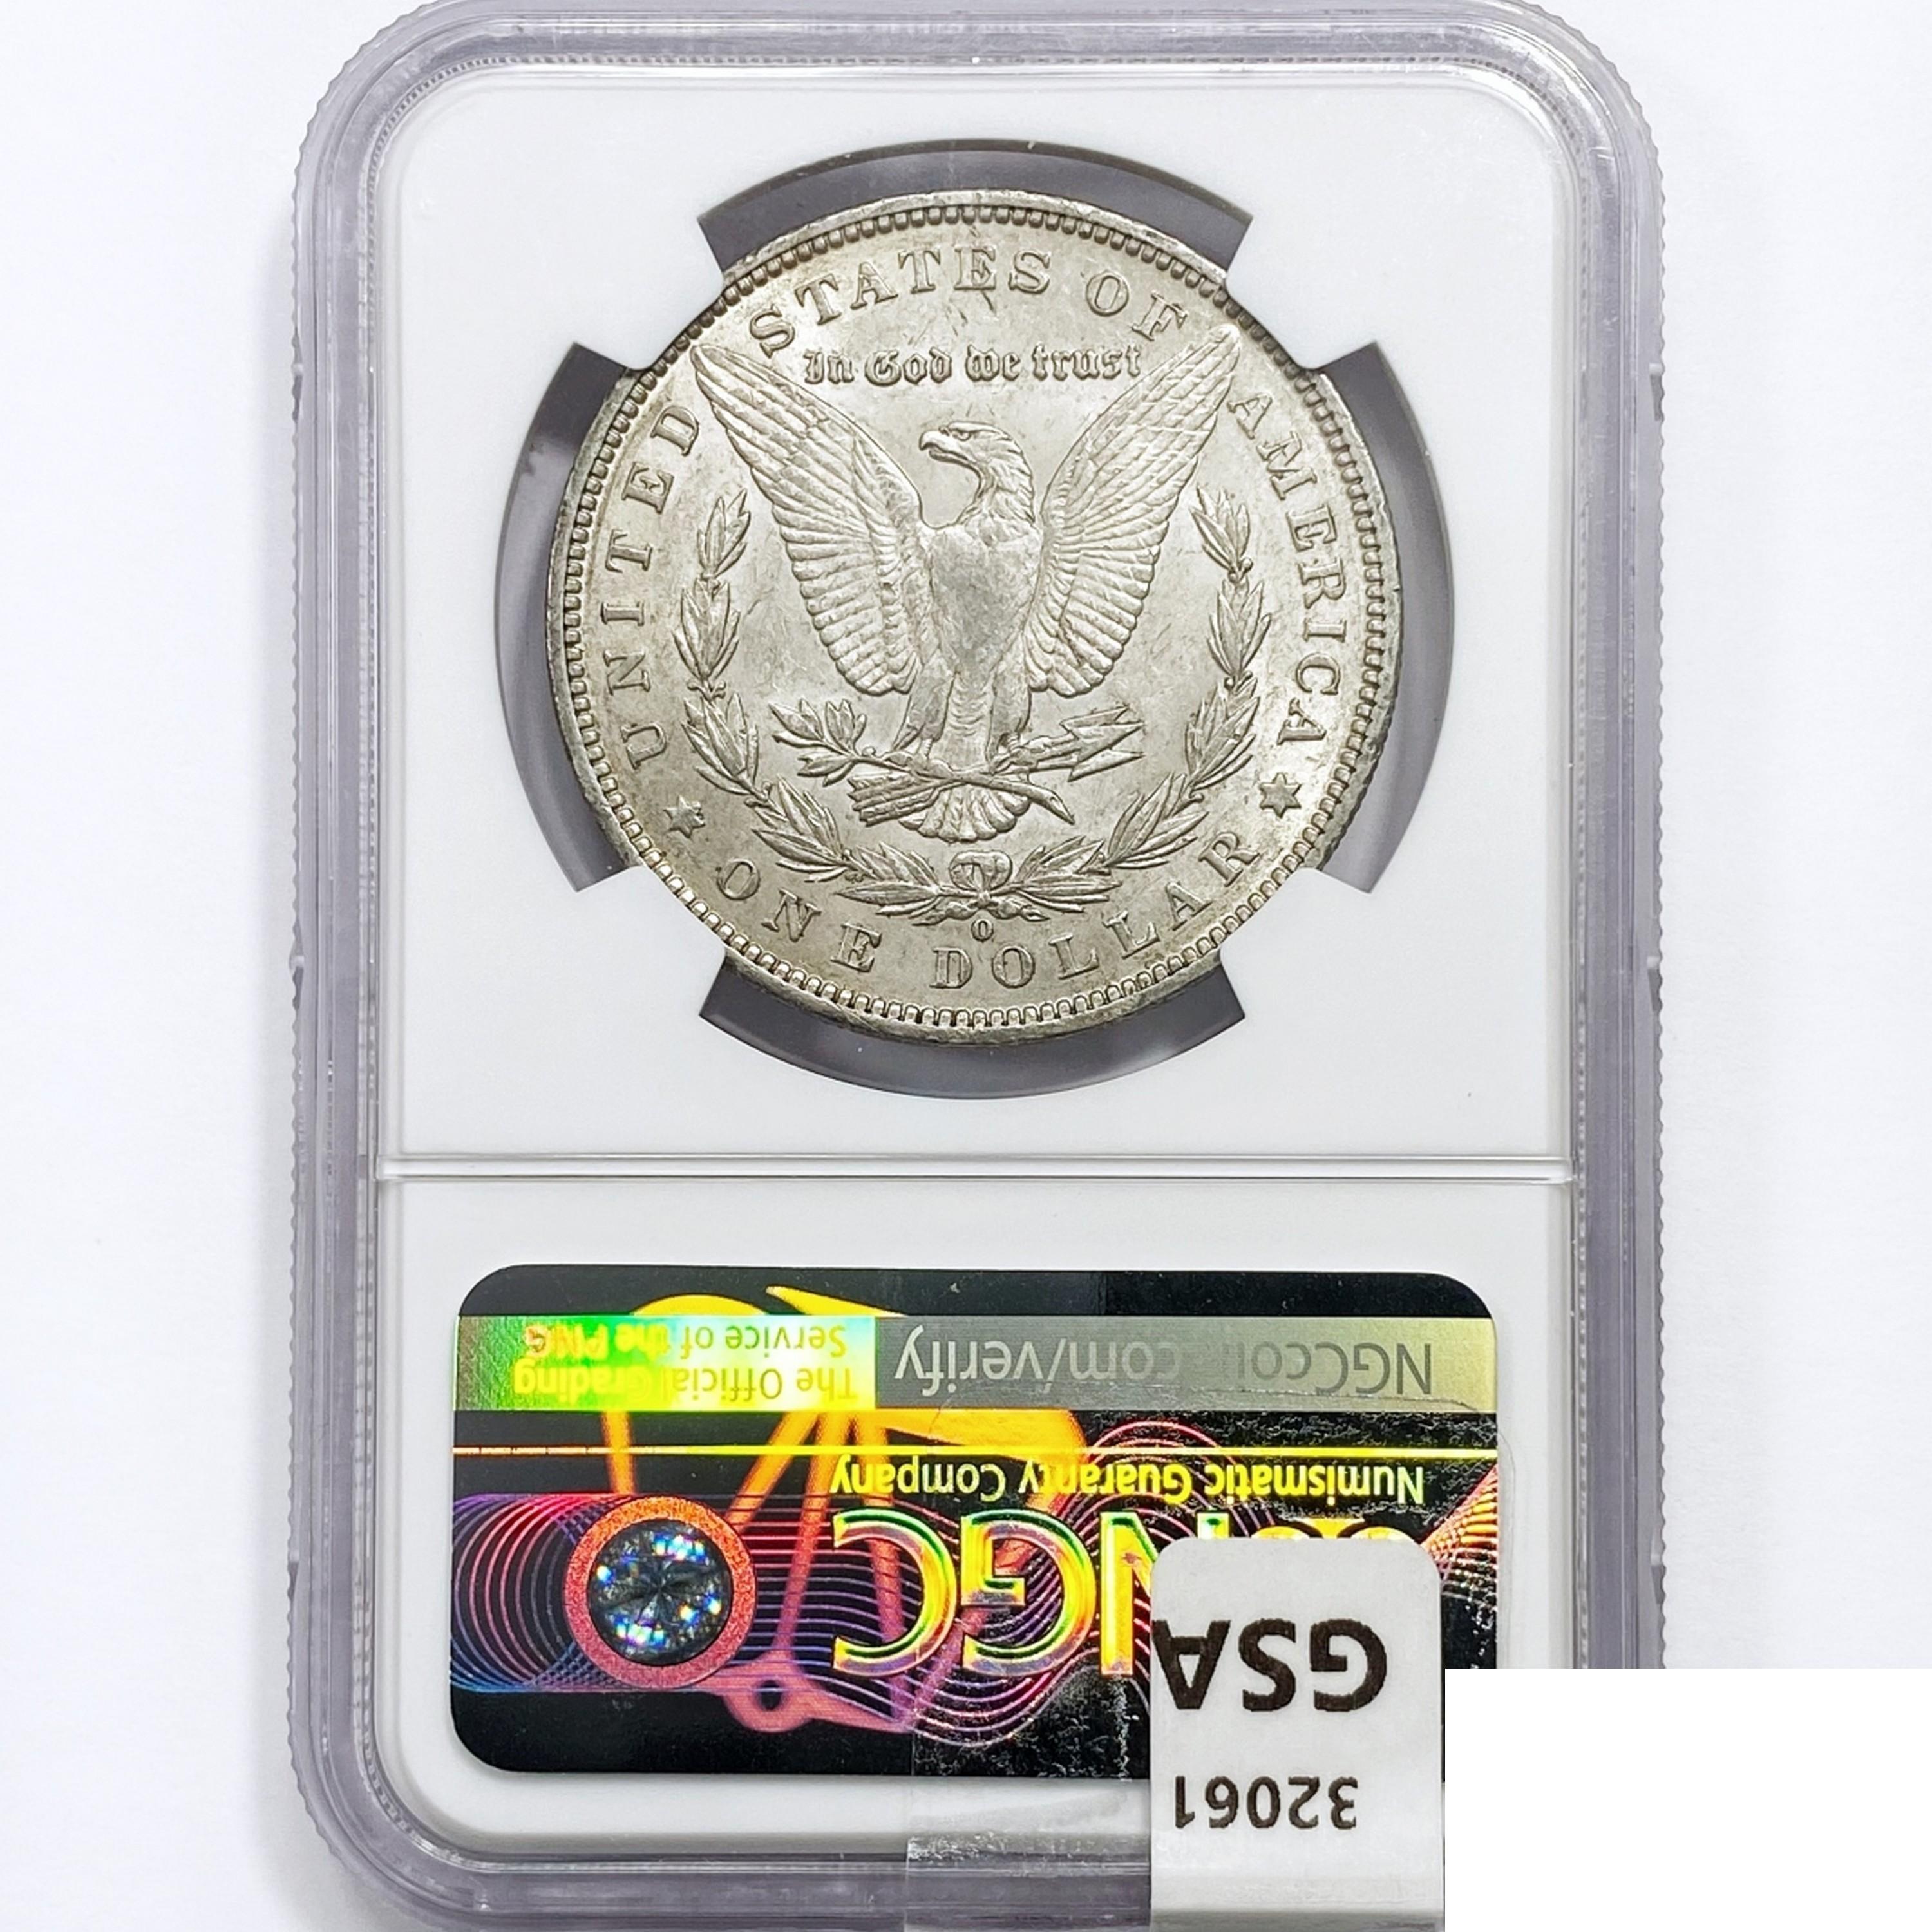 1892-O Morgan Silver Dollar NGC AU55